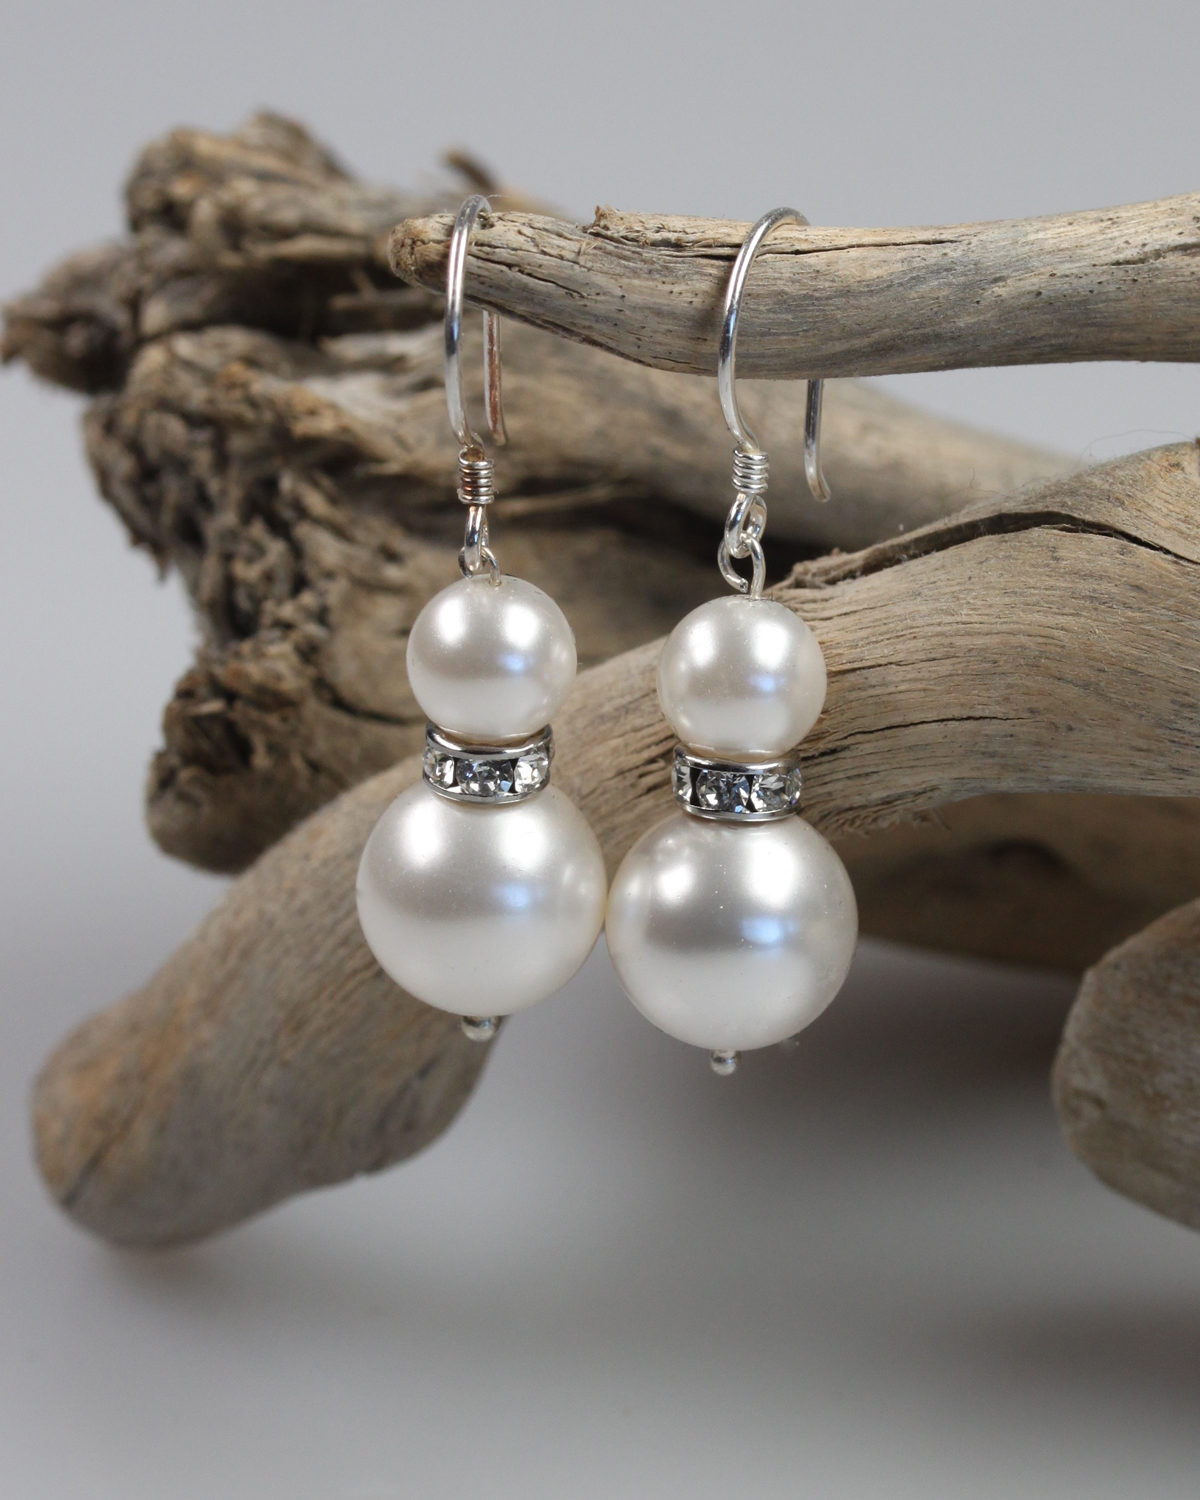 nemours swarovski pearls earrings